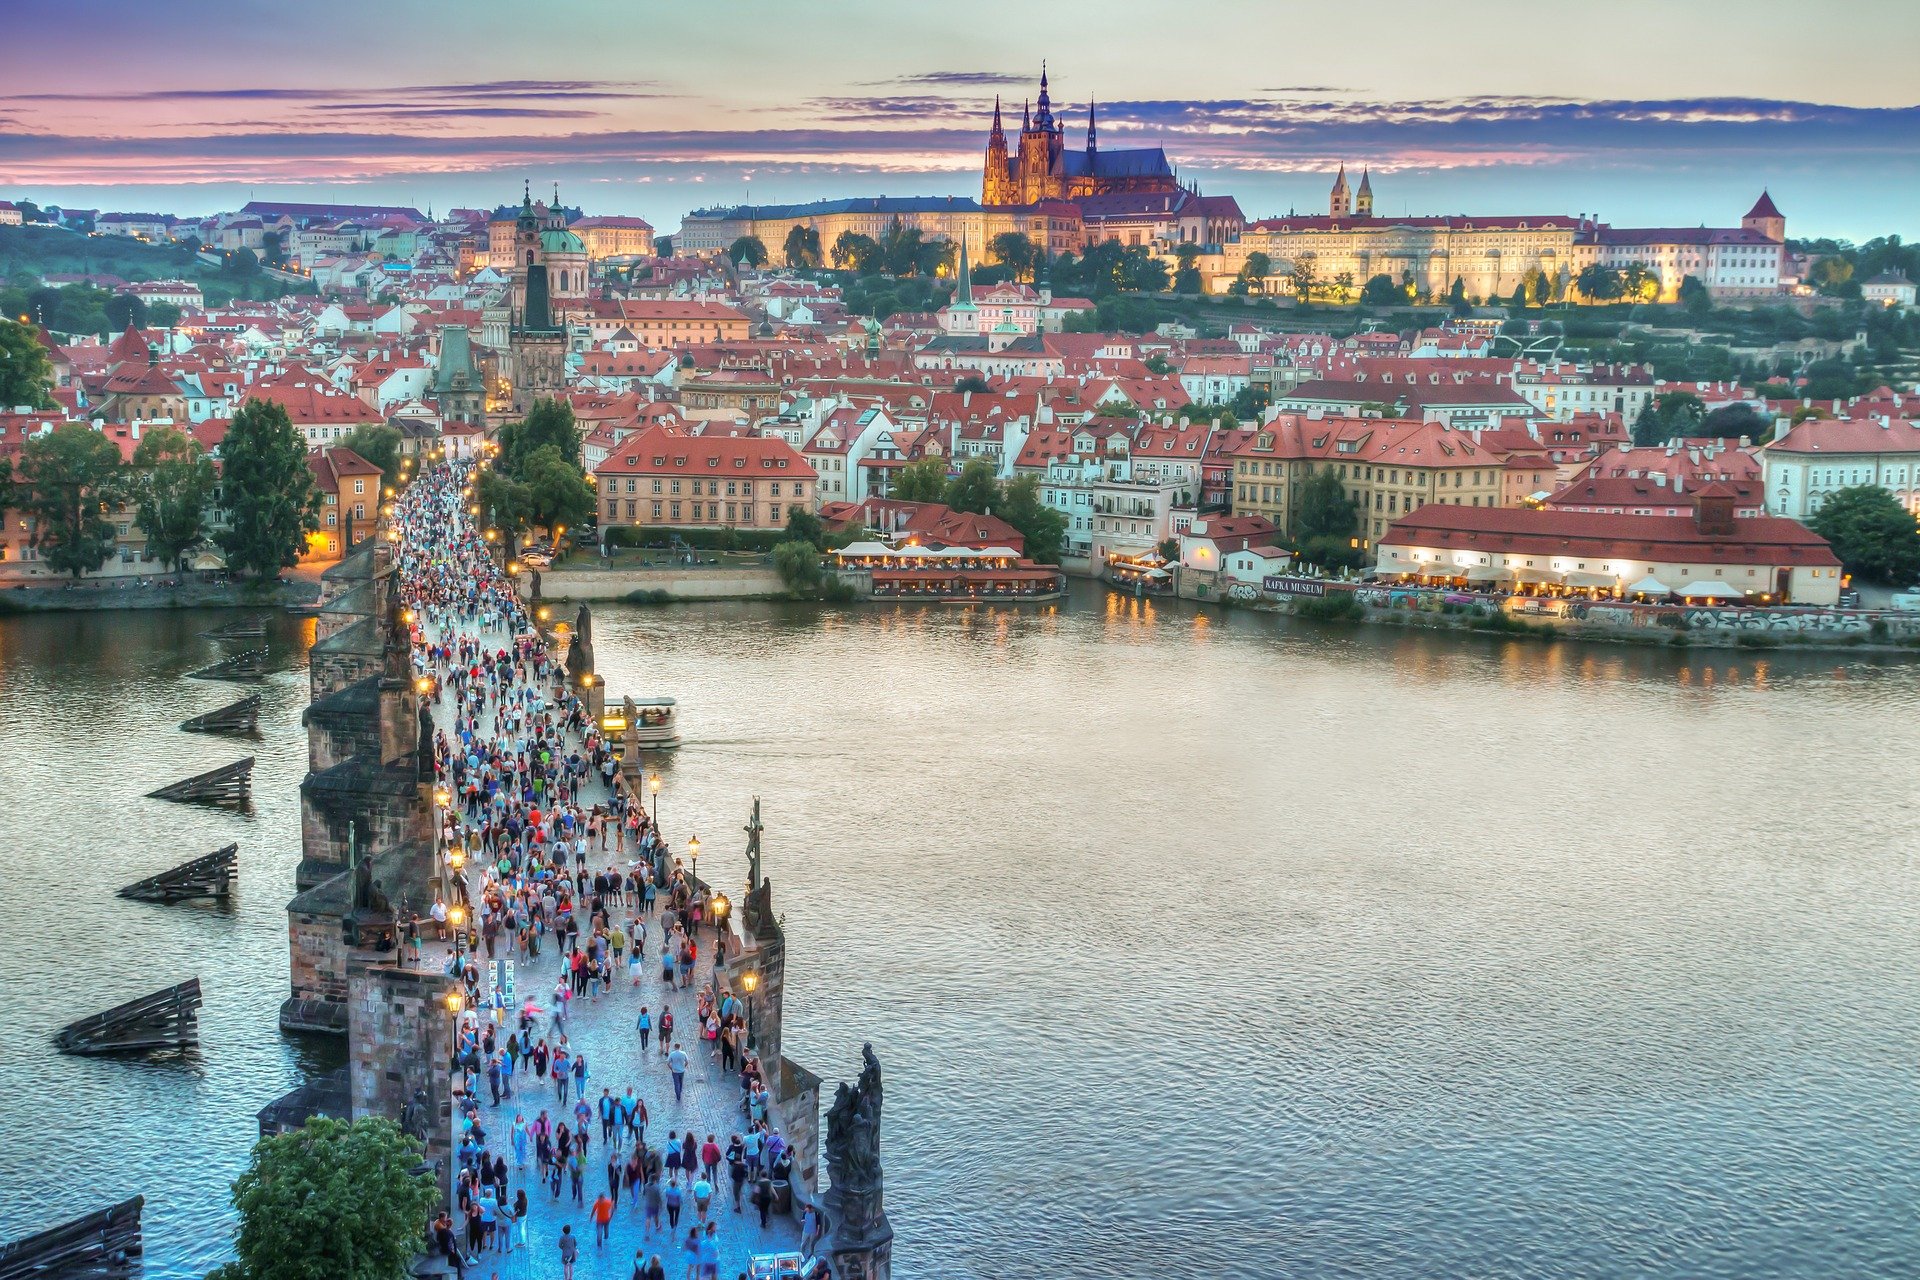 ما هي أهم المعالم السياحية في براغ و كيف تصل إليها؟